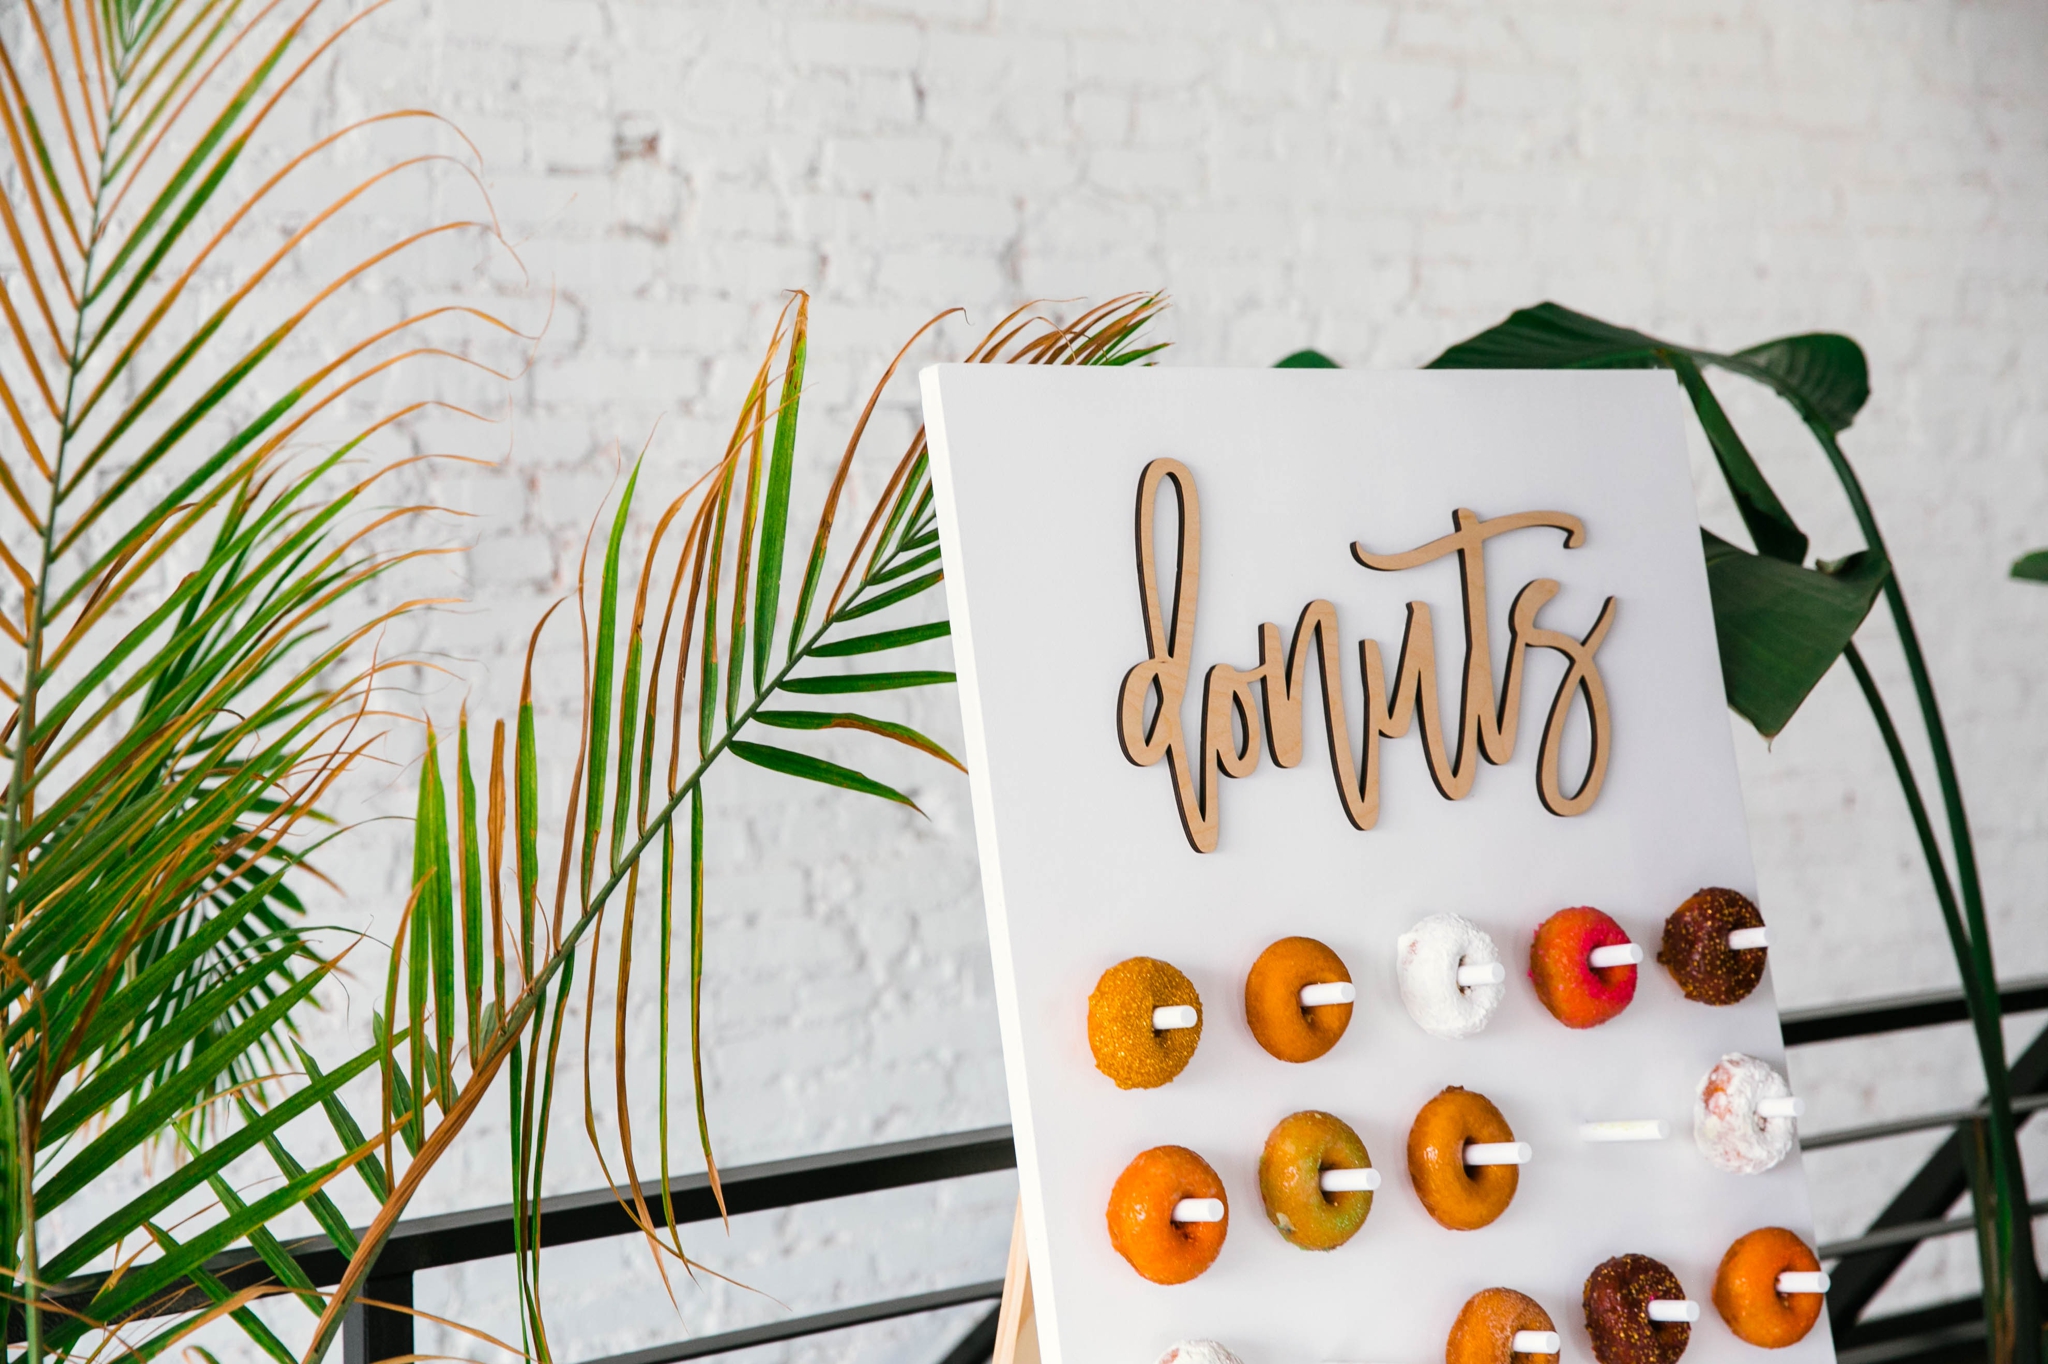 Donut Wall - Wedding Desert alternatives - Tropical Wedding Inspiration - Oahu Hawaii Photographer